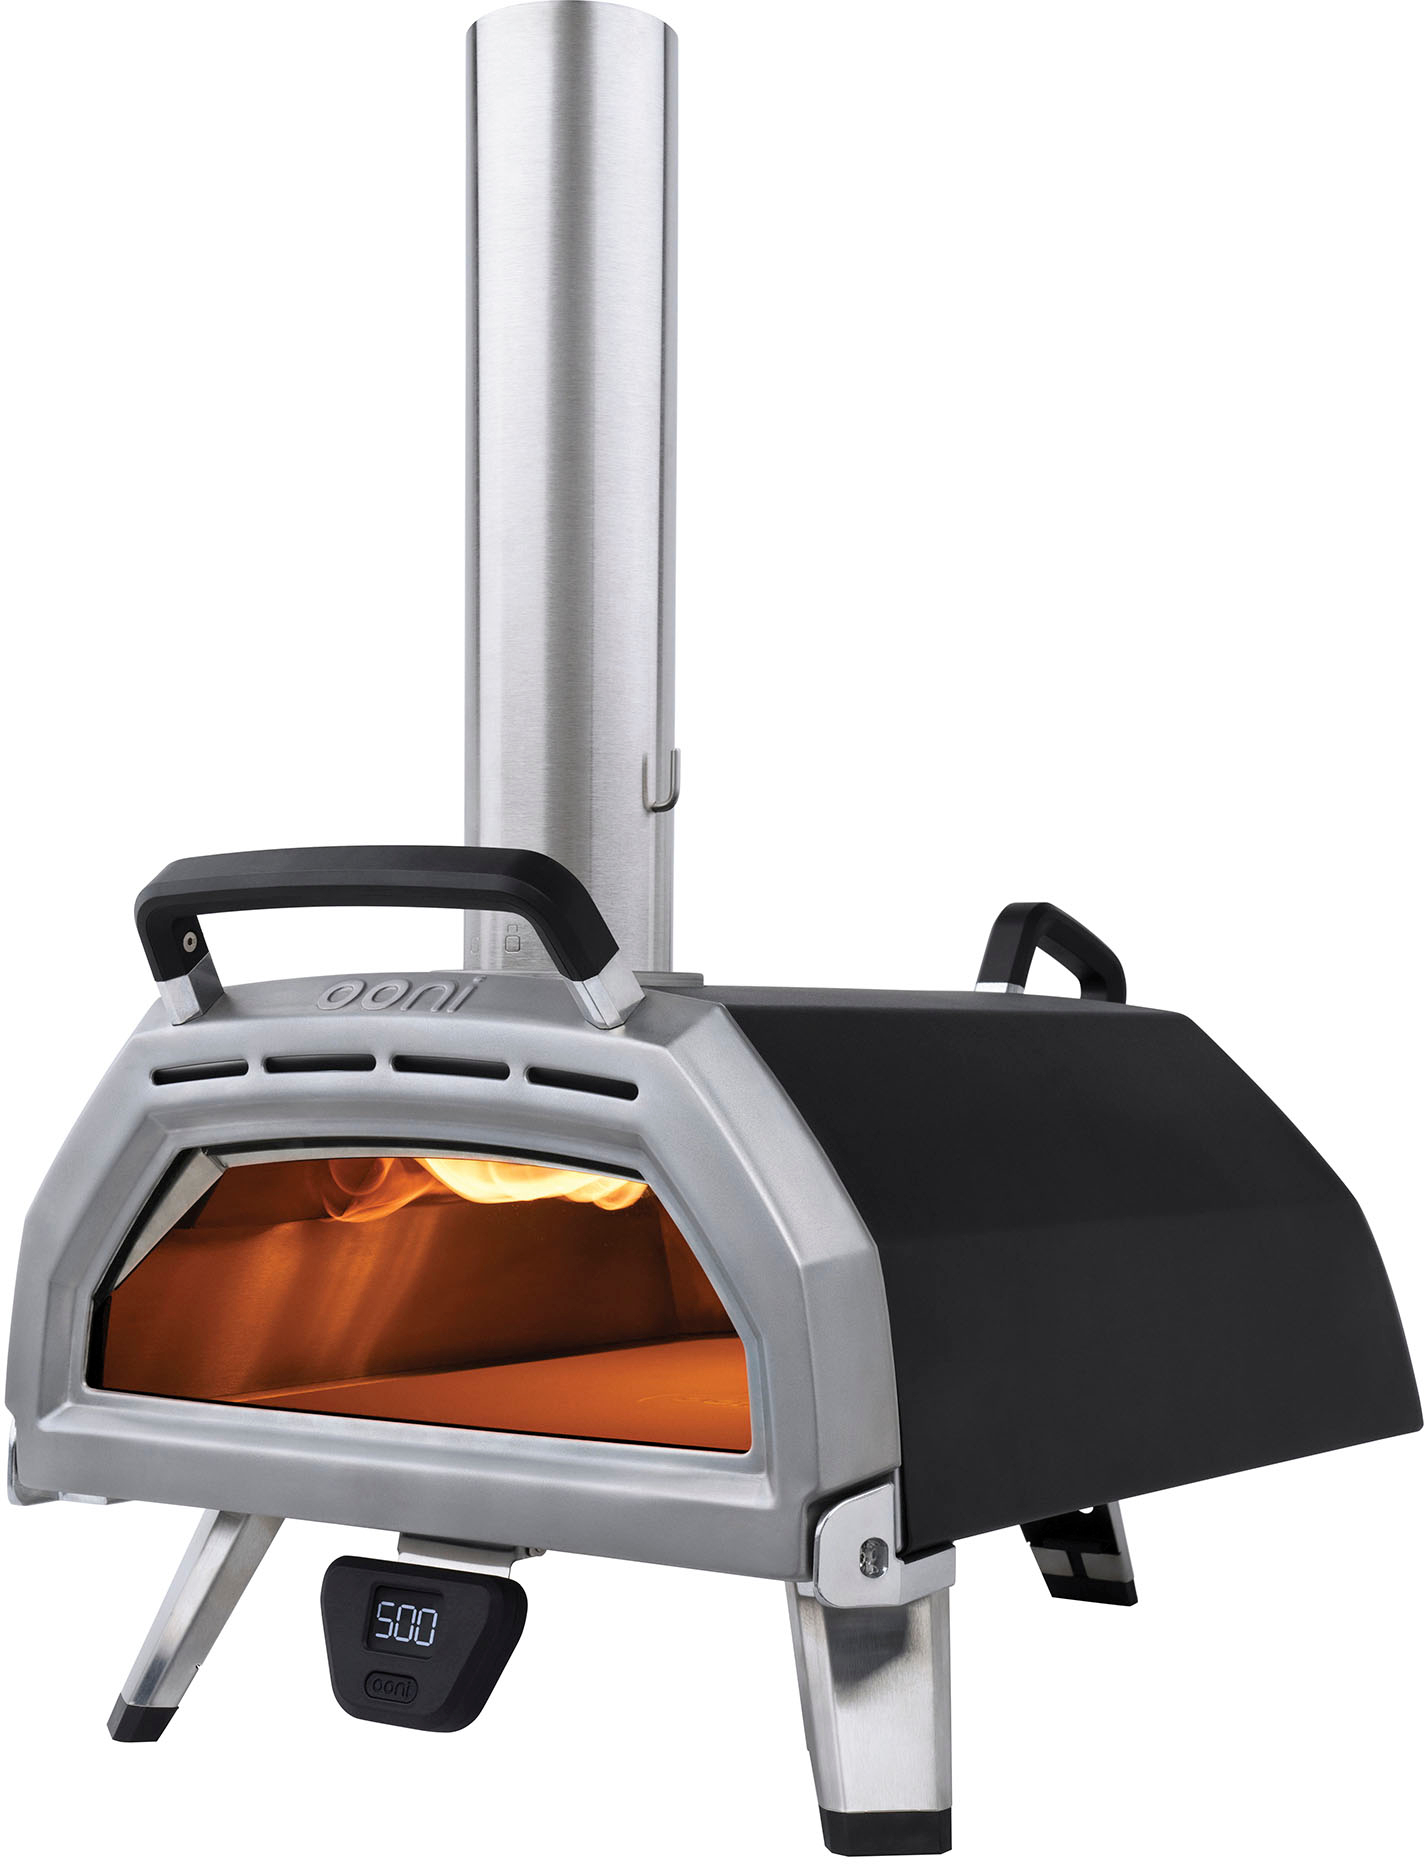 Ooni Karu 16 Multi-Fuel Pizza Oven Black UU-P0E400 - Best Buy